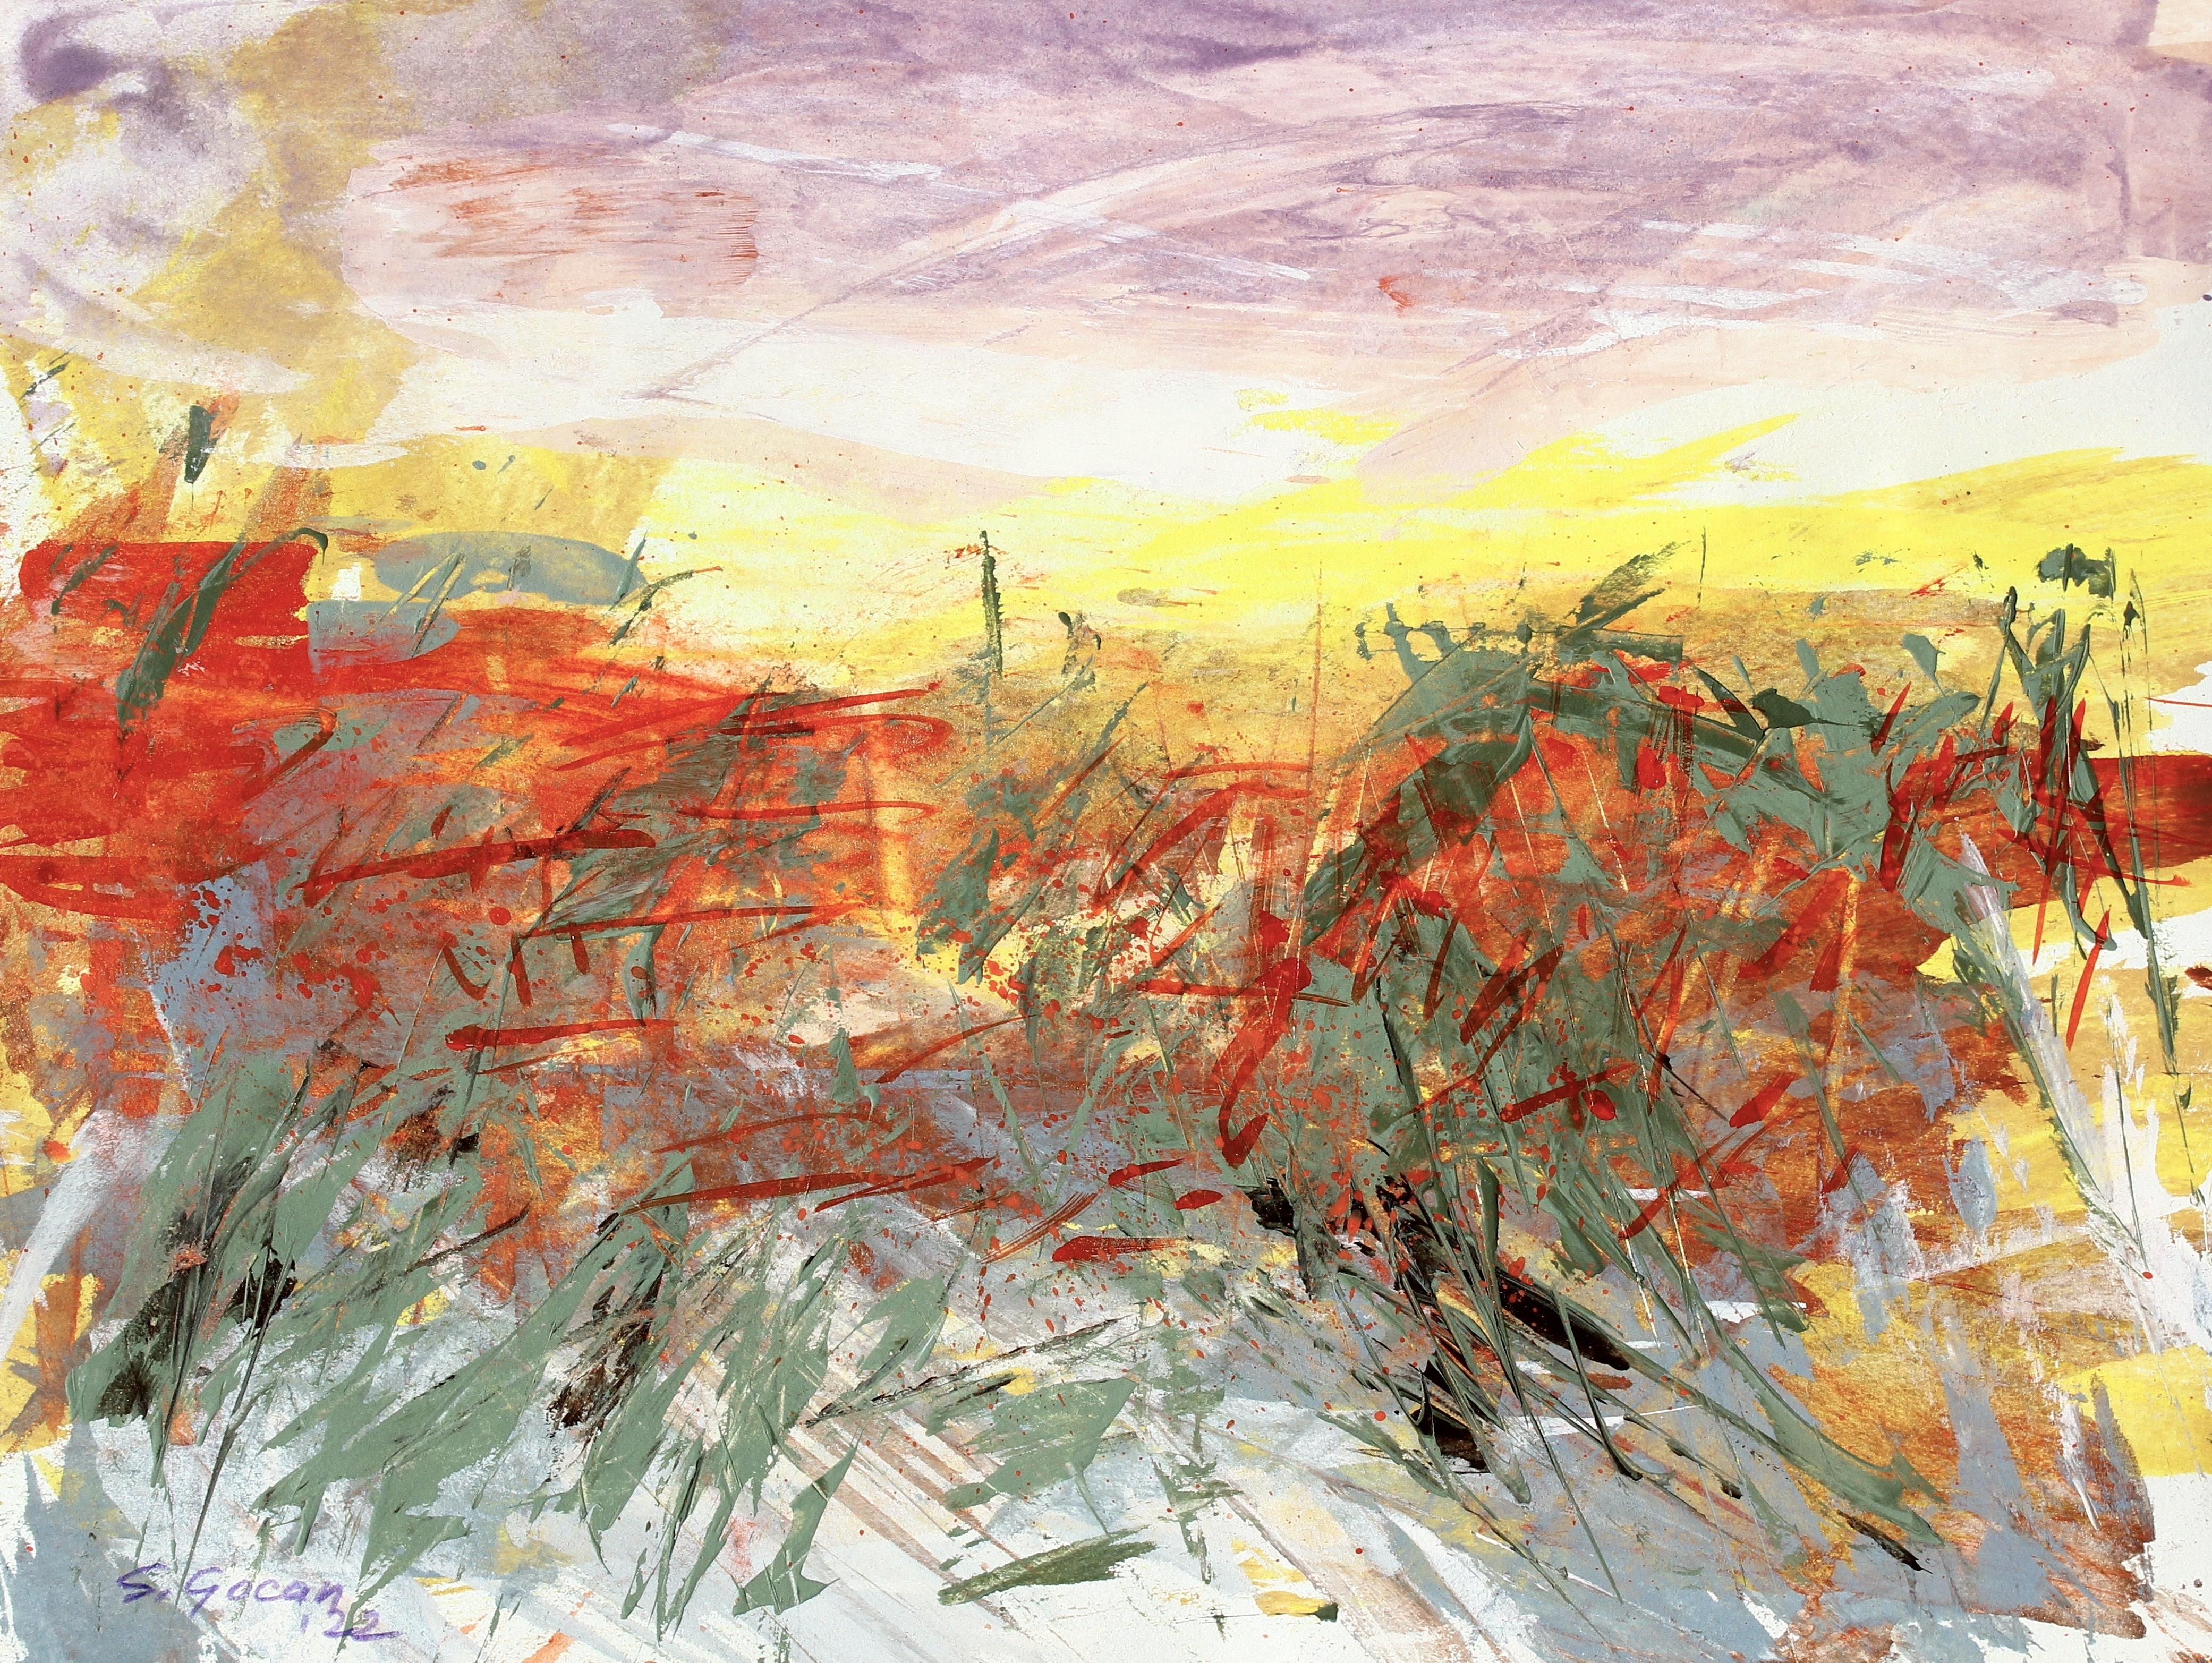 Landscape Painting Simona Gocan - Paysage désertique n°4, peinture de paysage expressionniste abstrait contemporaine signée